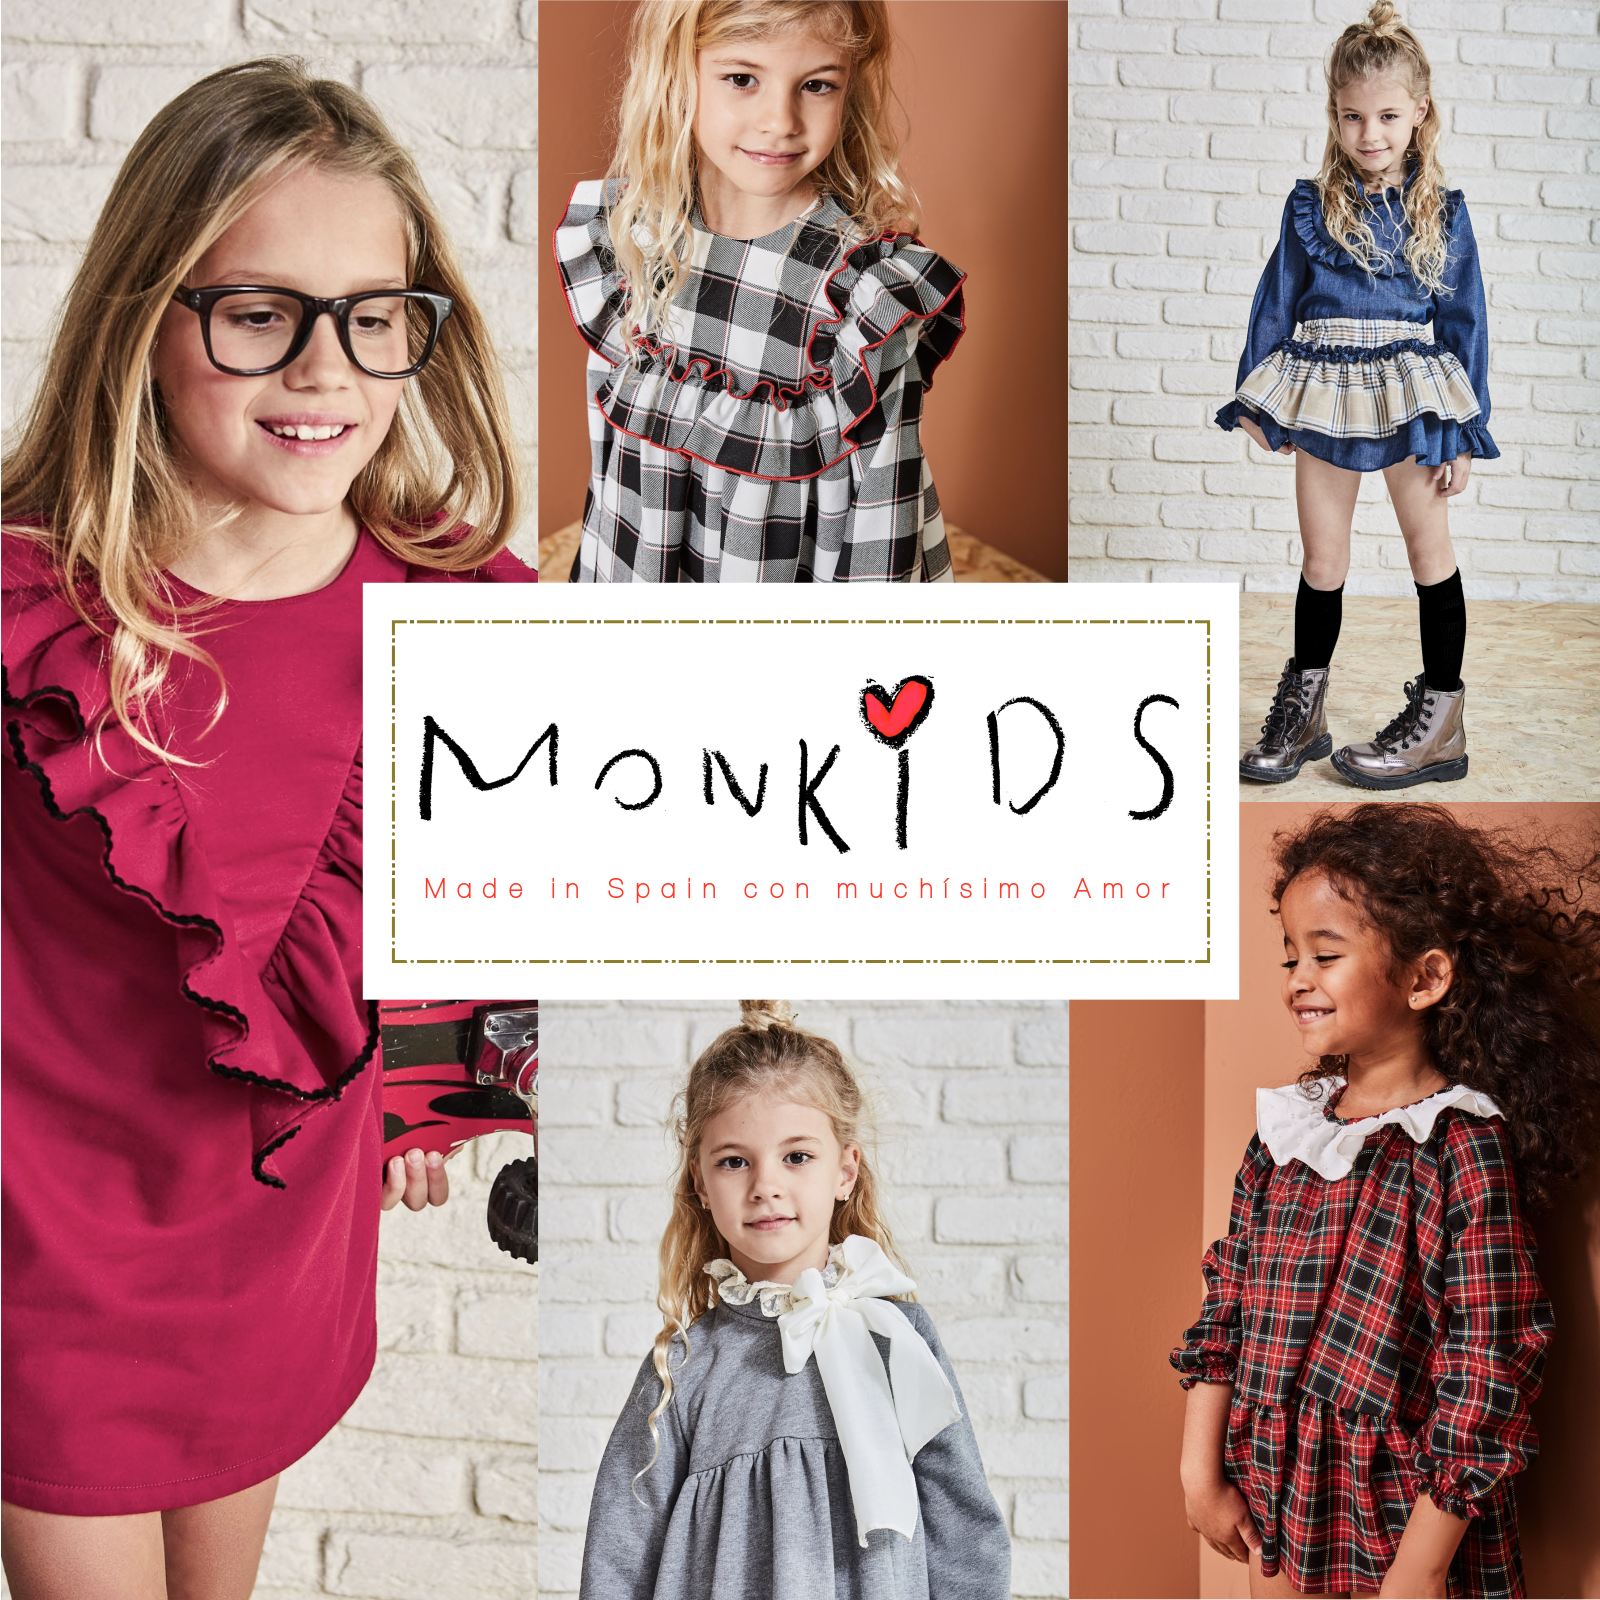 Descubriendo nuevas firmas de moda Infantil: MONKIDS, ropa para niños la que le resbalan las - Blog MissBaby